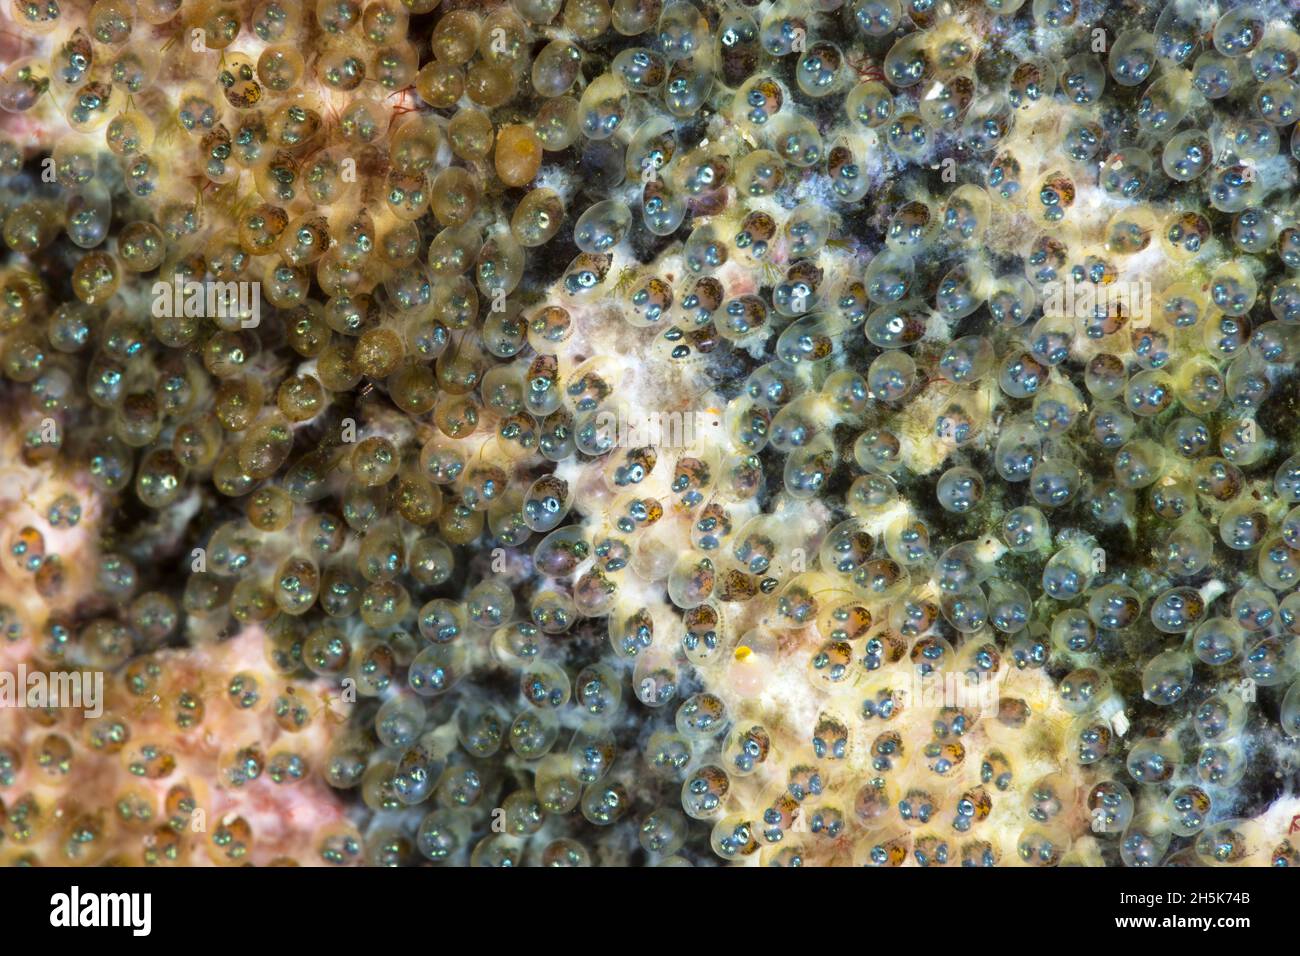 Blackspot Sergeantfish (Abudefduf sordidus) Egg Nest with hundreds of 1mm size eggs, Maui; Hawaii, United States of America Stock Photo